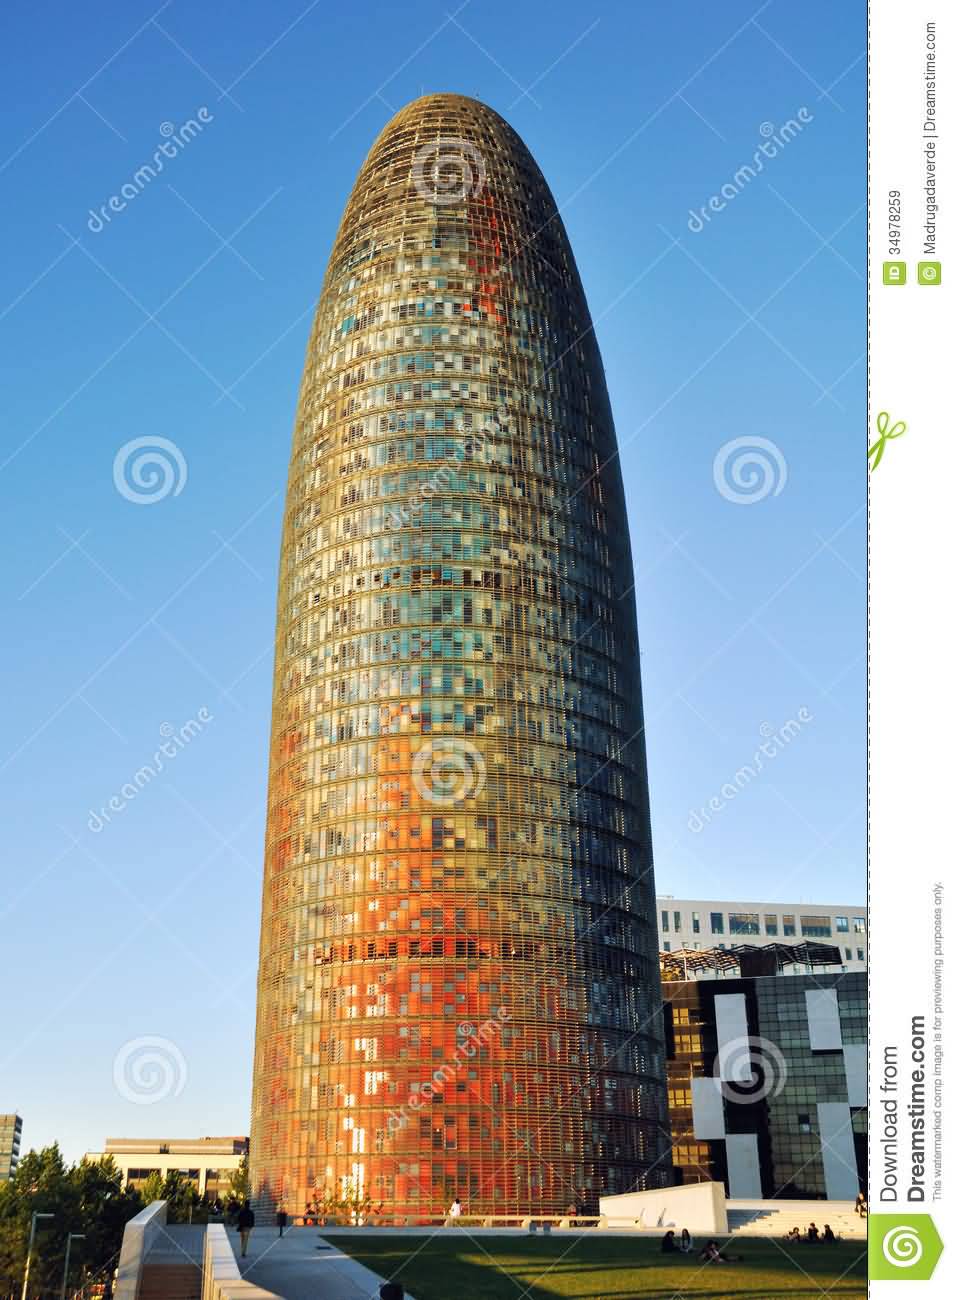 Torre Agbar In Barcelona, Spain